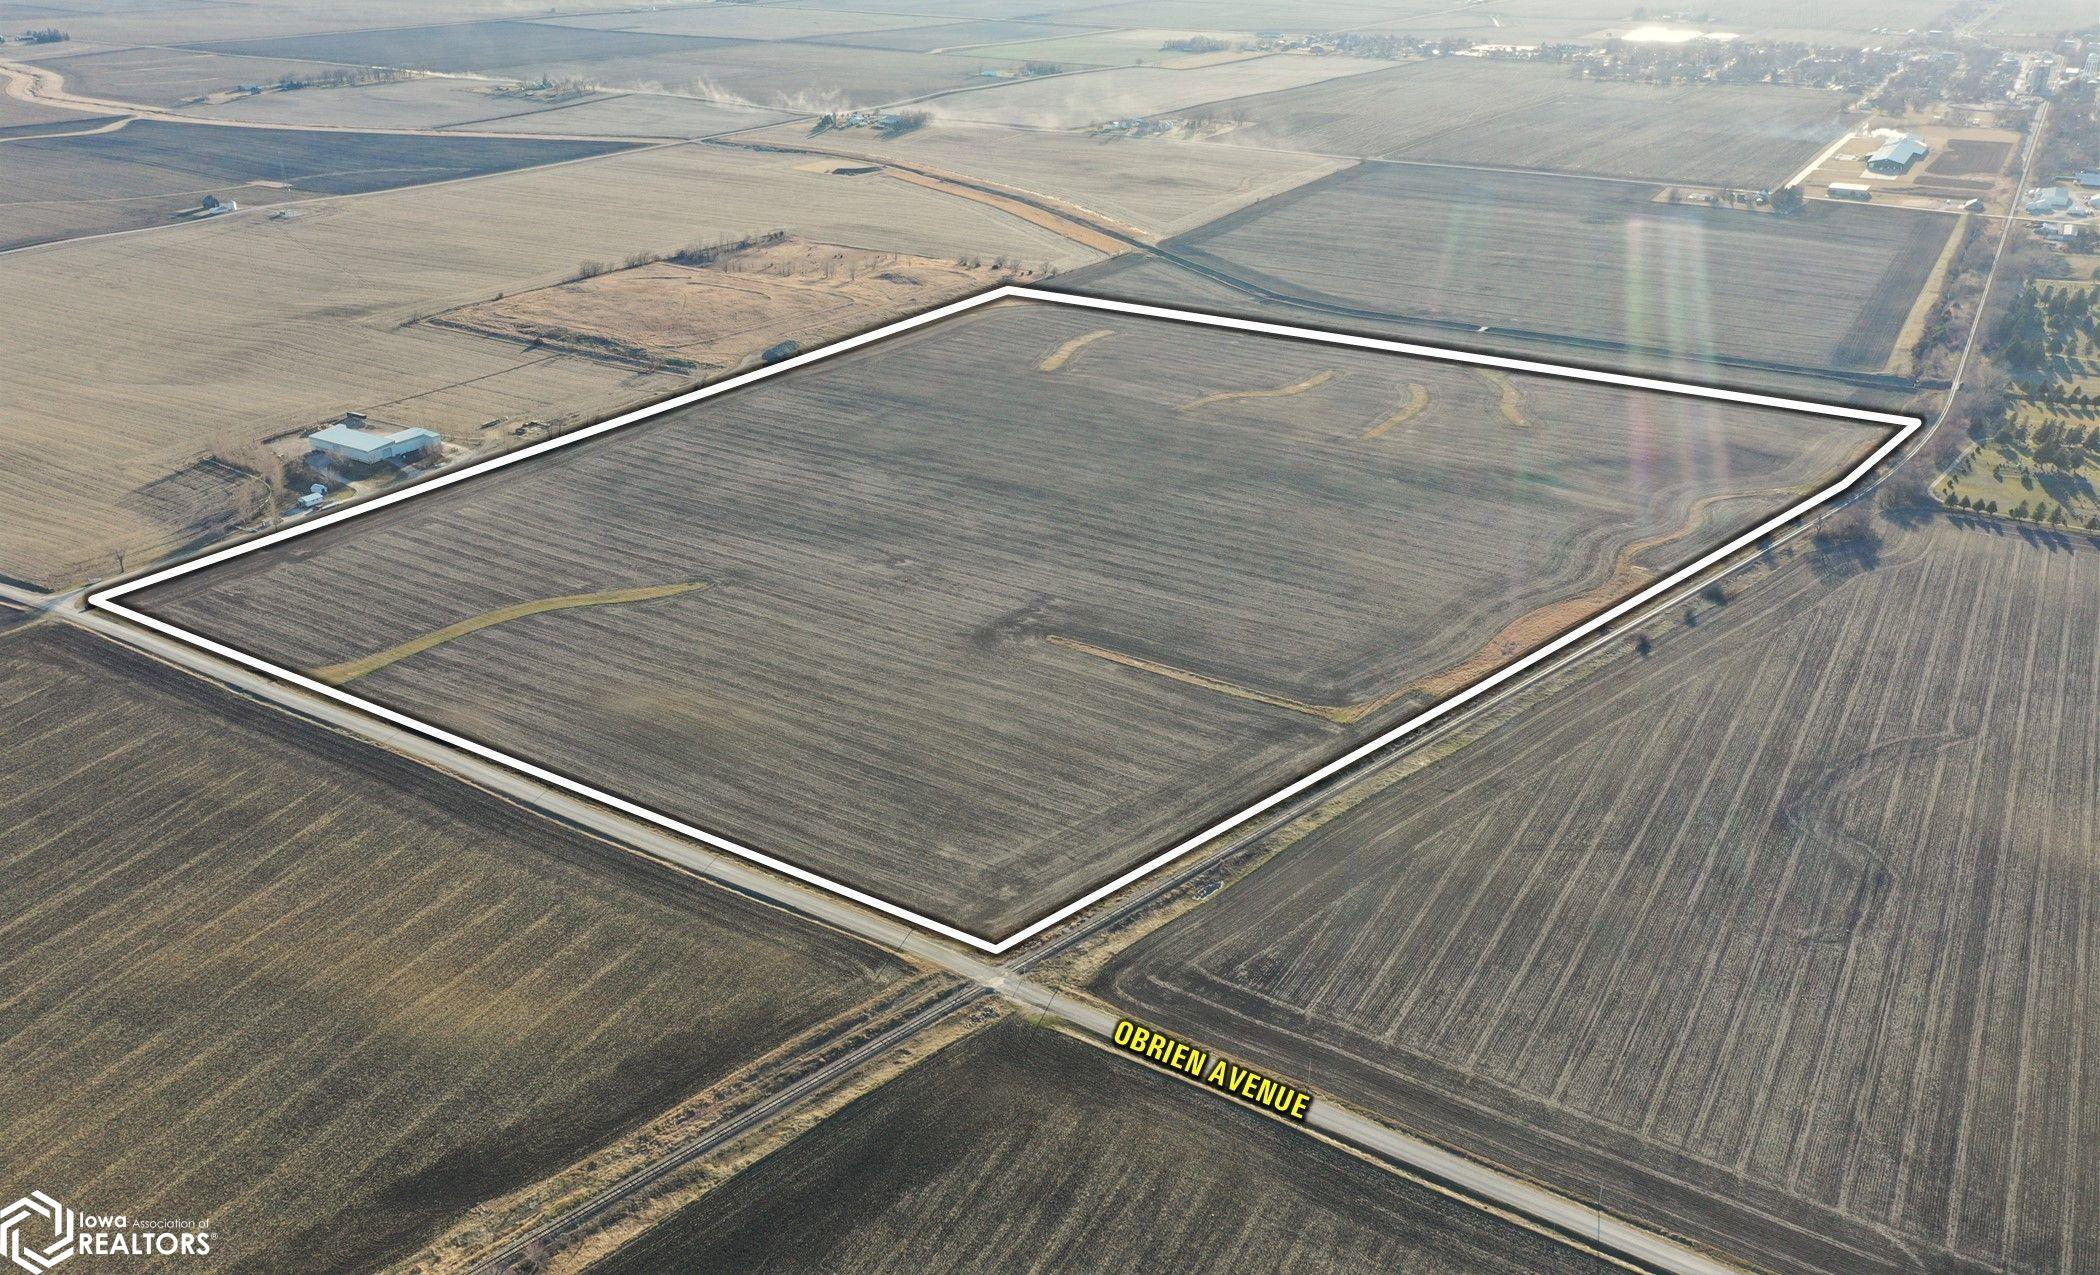 Iowa Highway 3, Clarion, Iowa 50525, ,Farm,For Sale,Iowa Highway 3,6316257